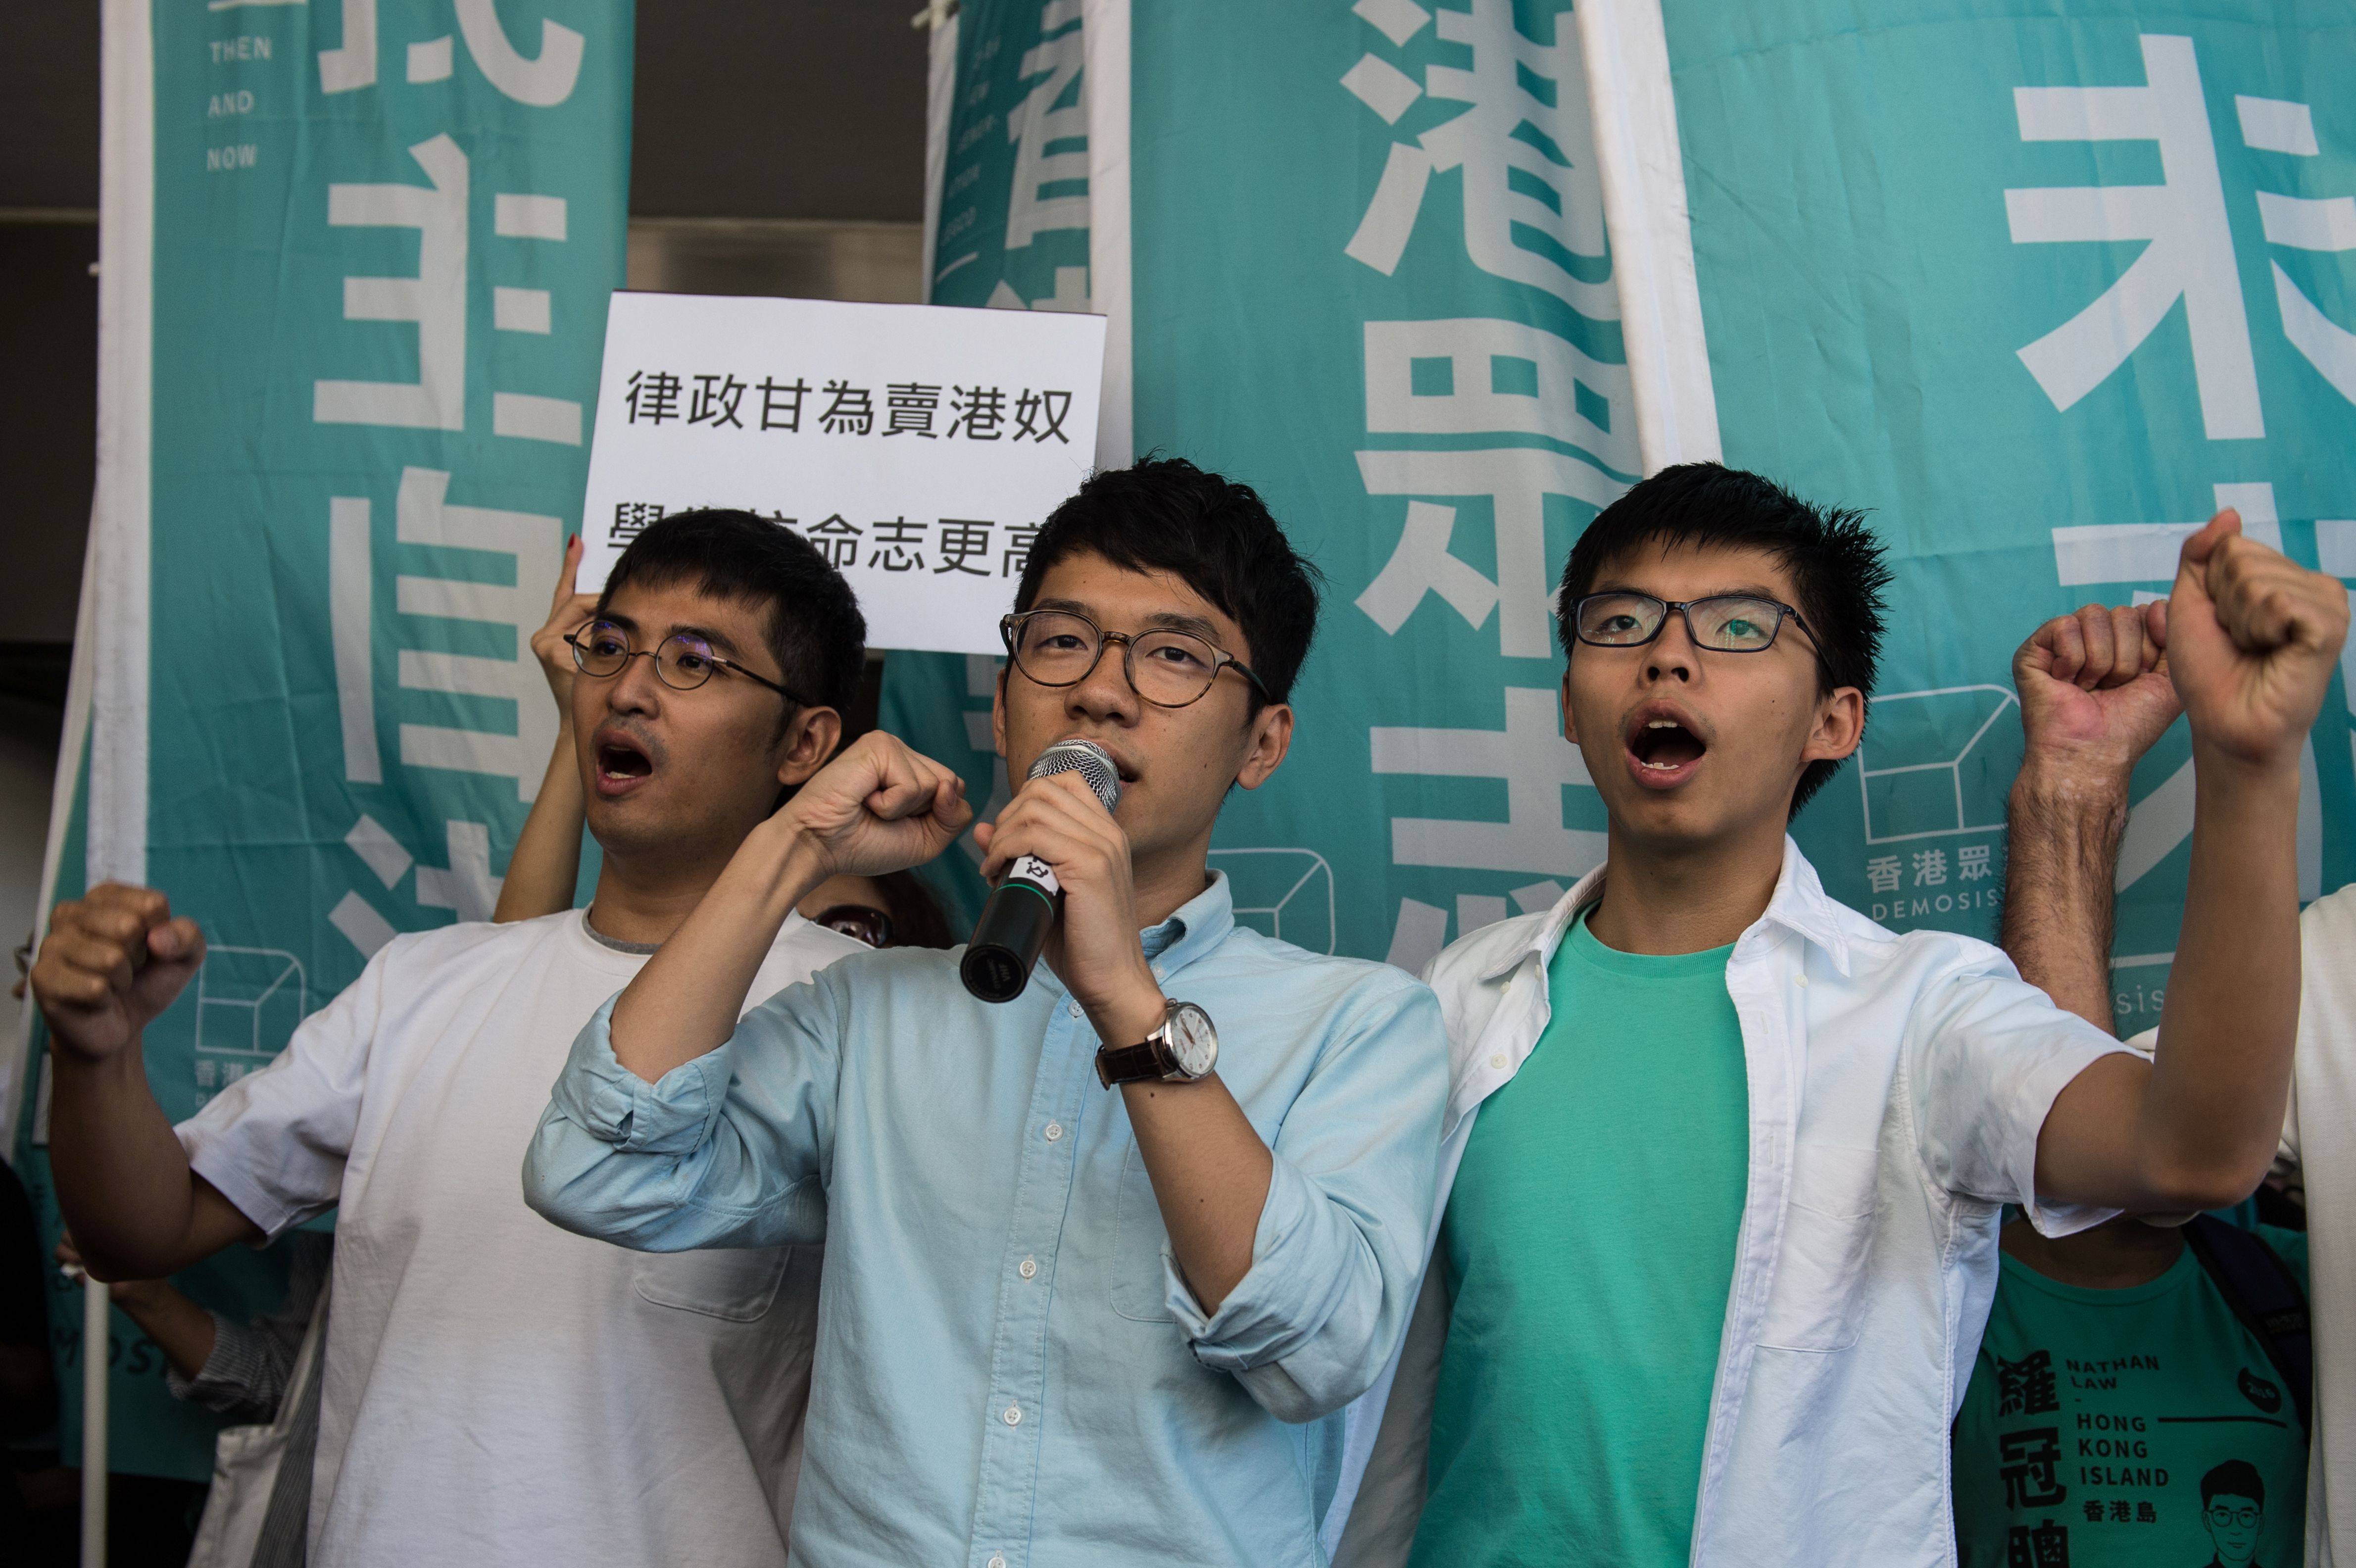 Hong Kong, Joshua Wong, Freedom of expression